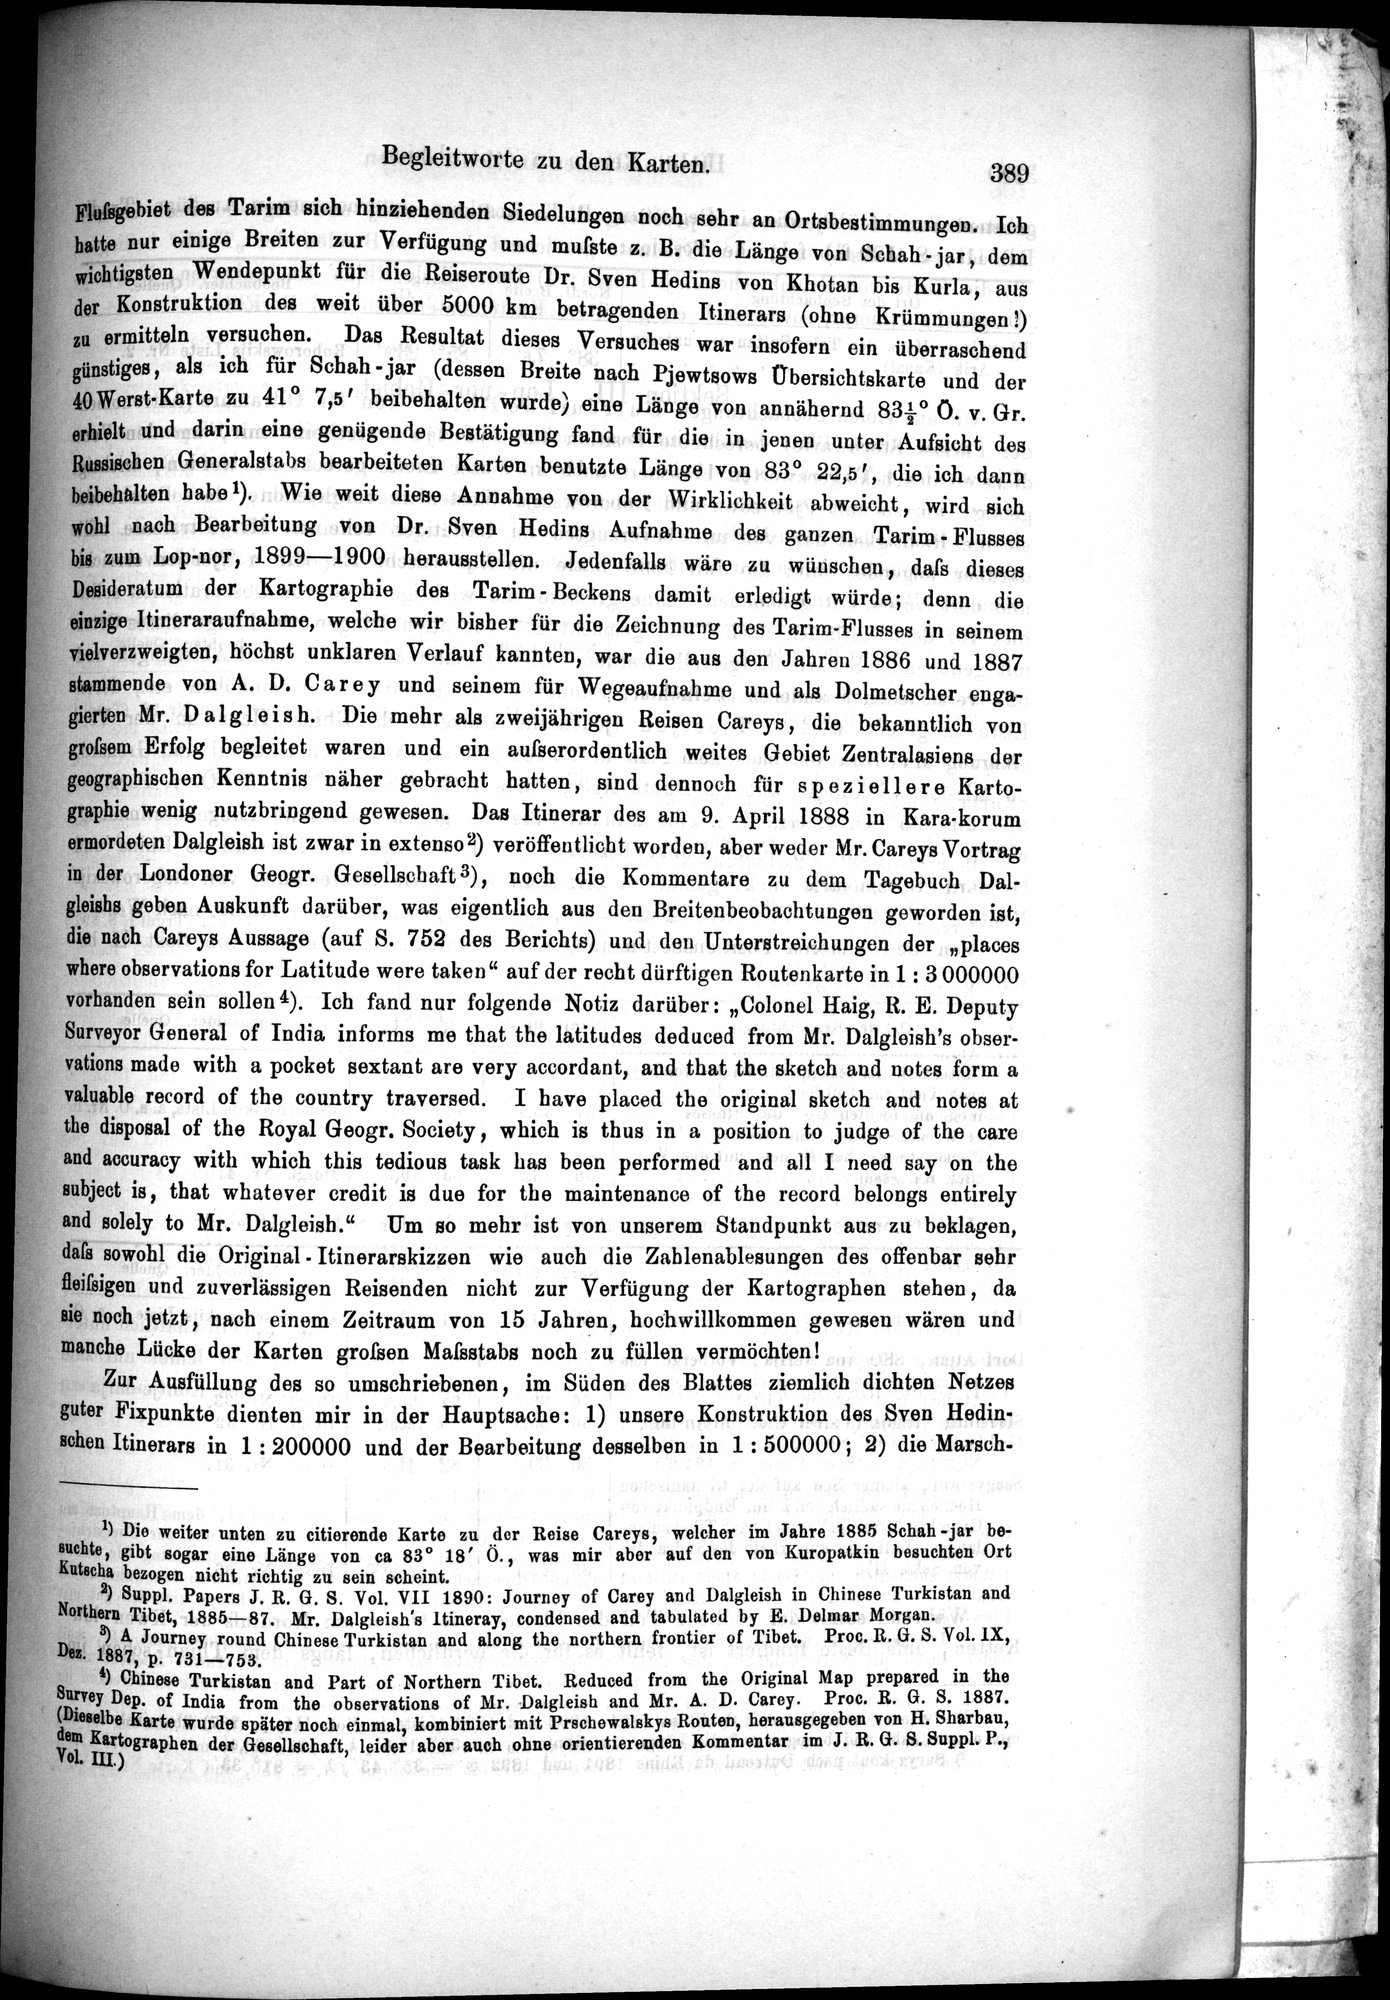 Die Geographische-Wissenschaftlichen Ergebnisse meiner Reisen in Zentralasien, 1894-1897 : vol.1 / Page 401 (Grayscale High Resolution Image)